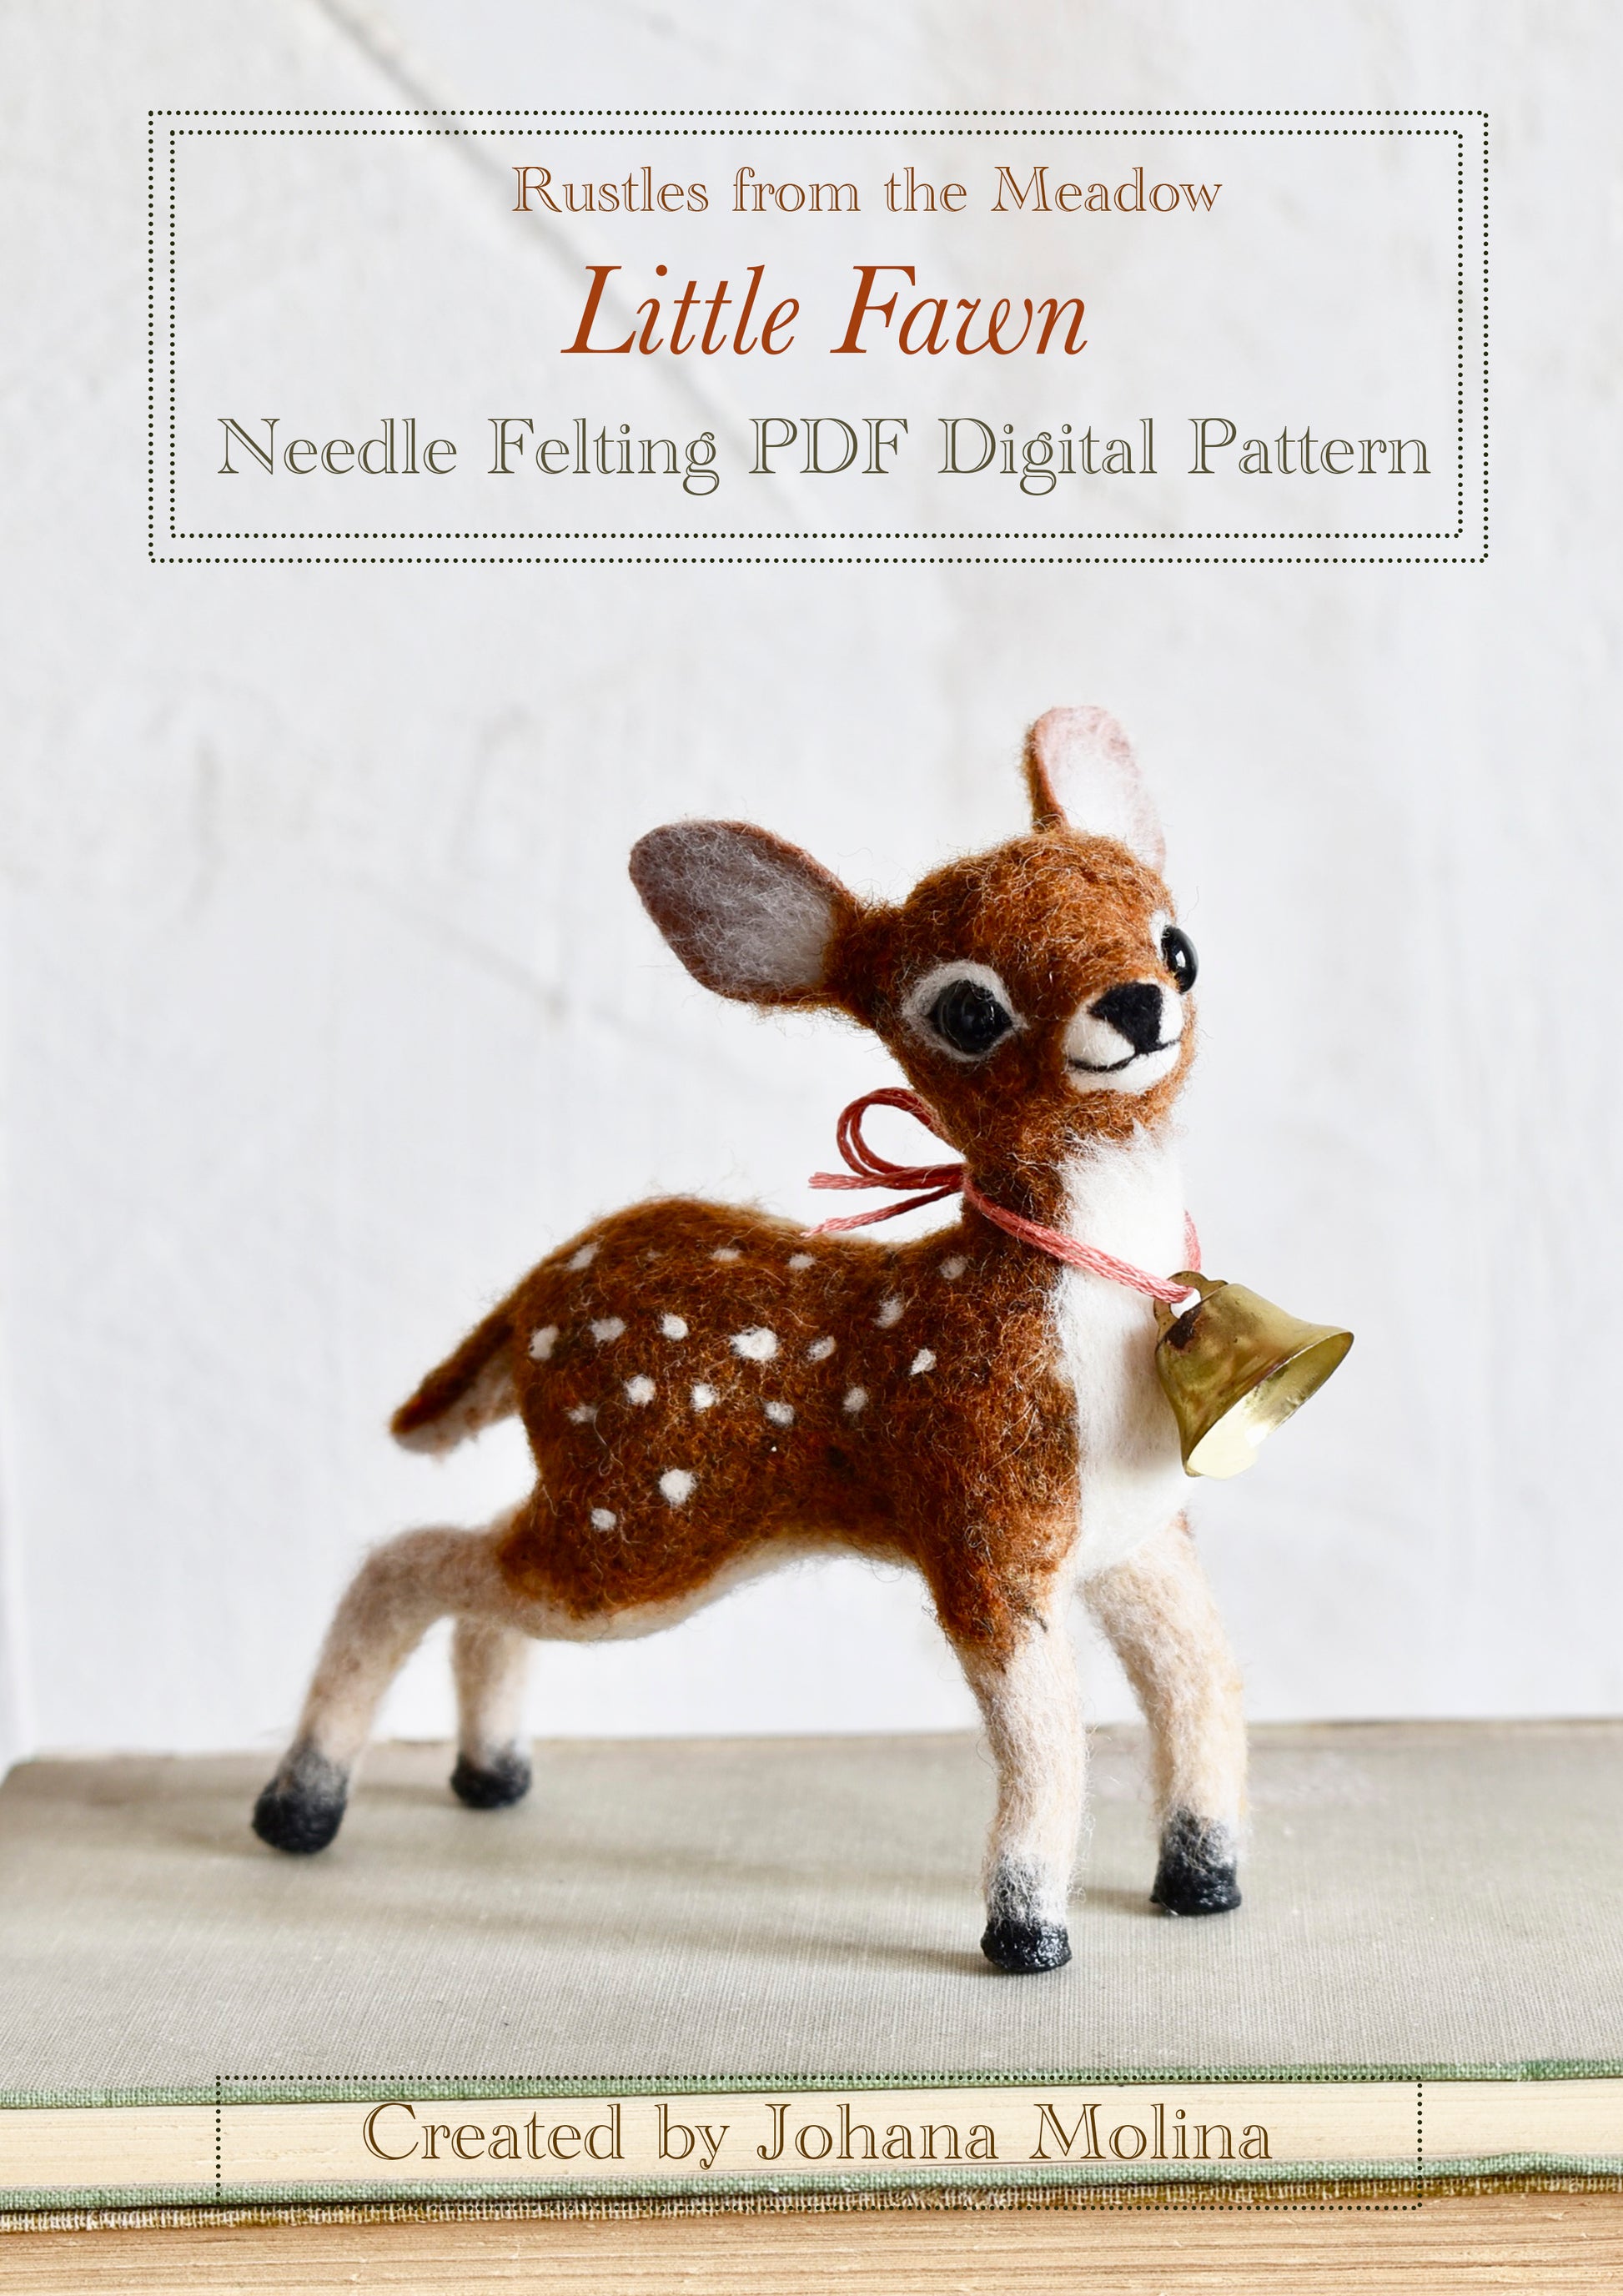 Little Fawn - Needle Felting PDF DIGITAL PATTERN – Rustles from the Meadow